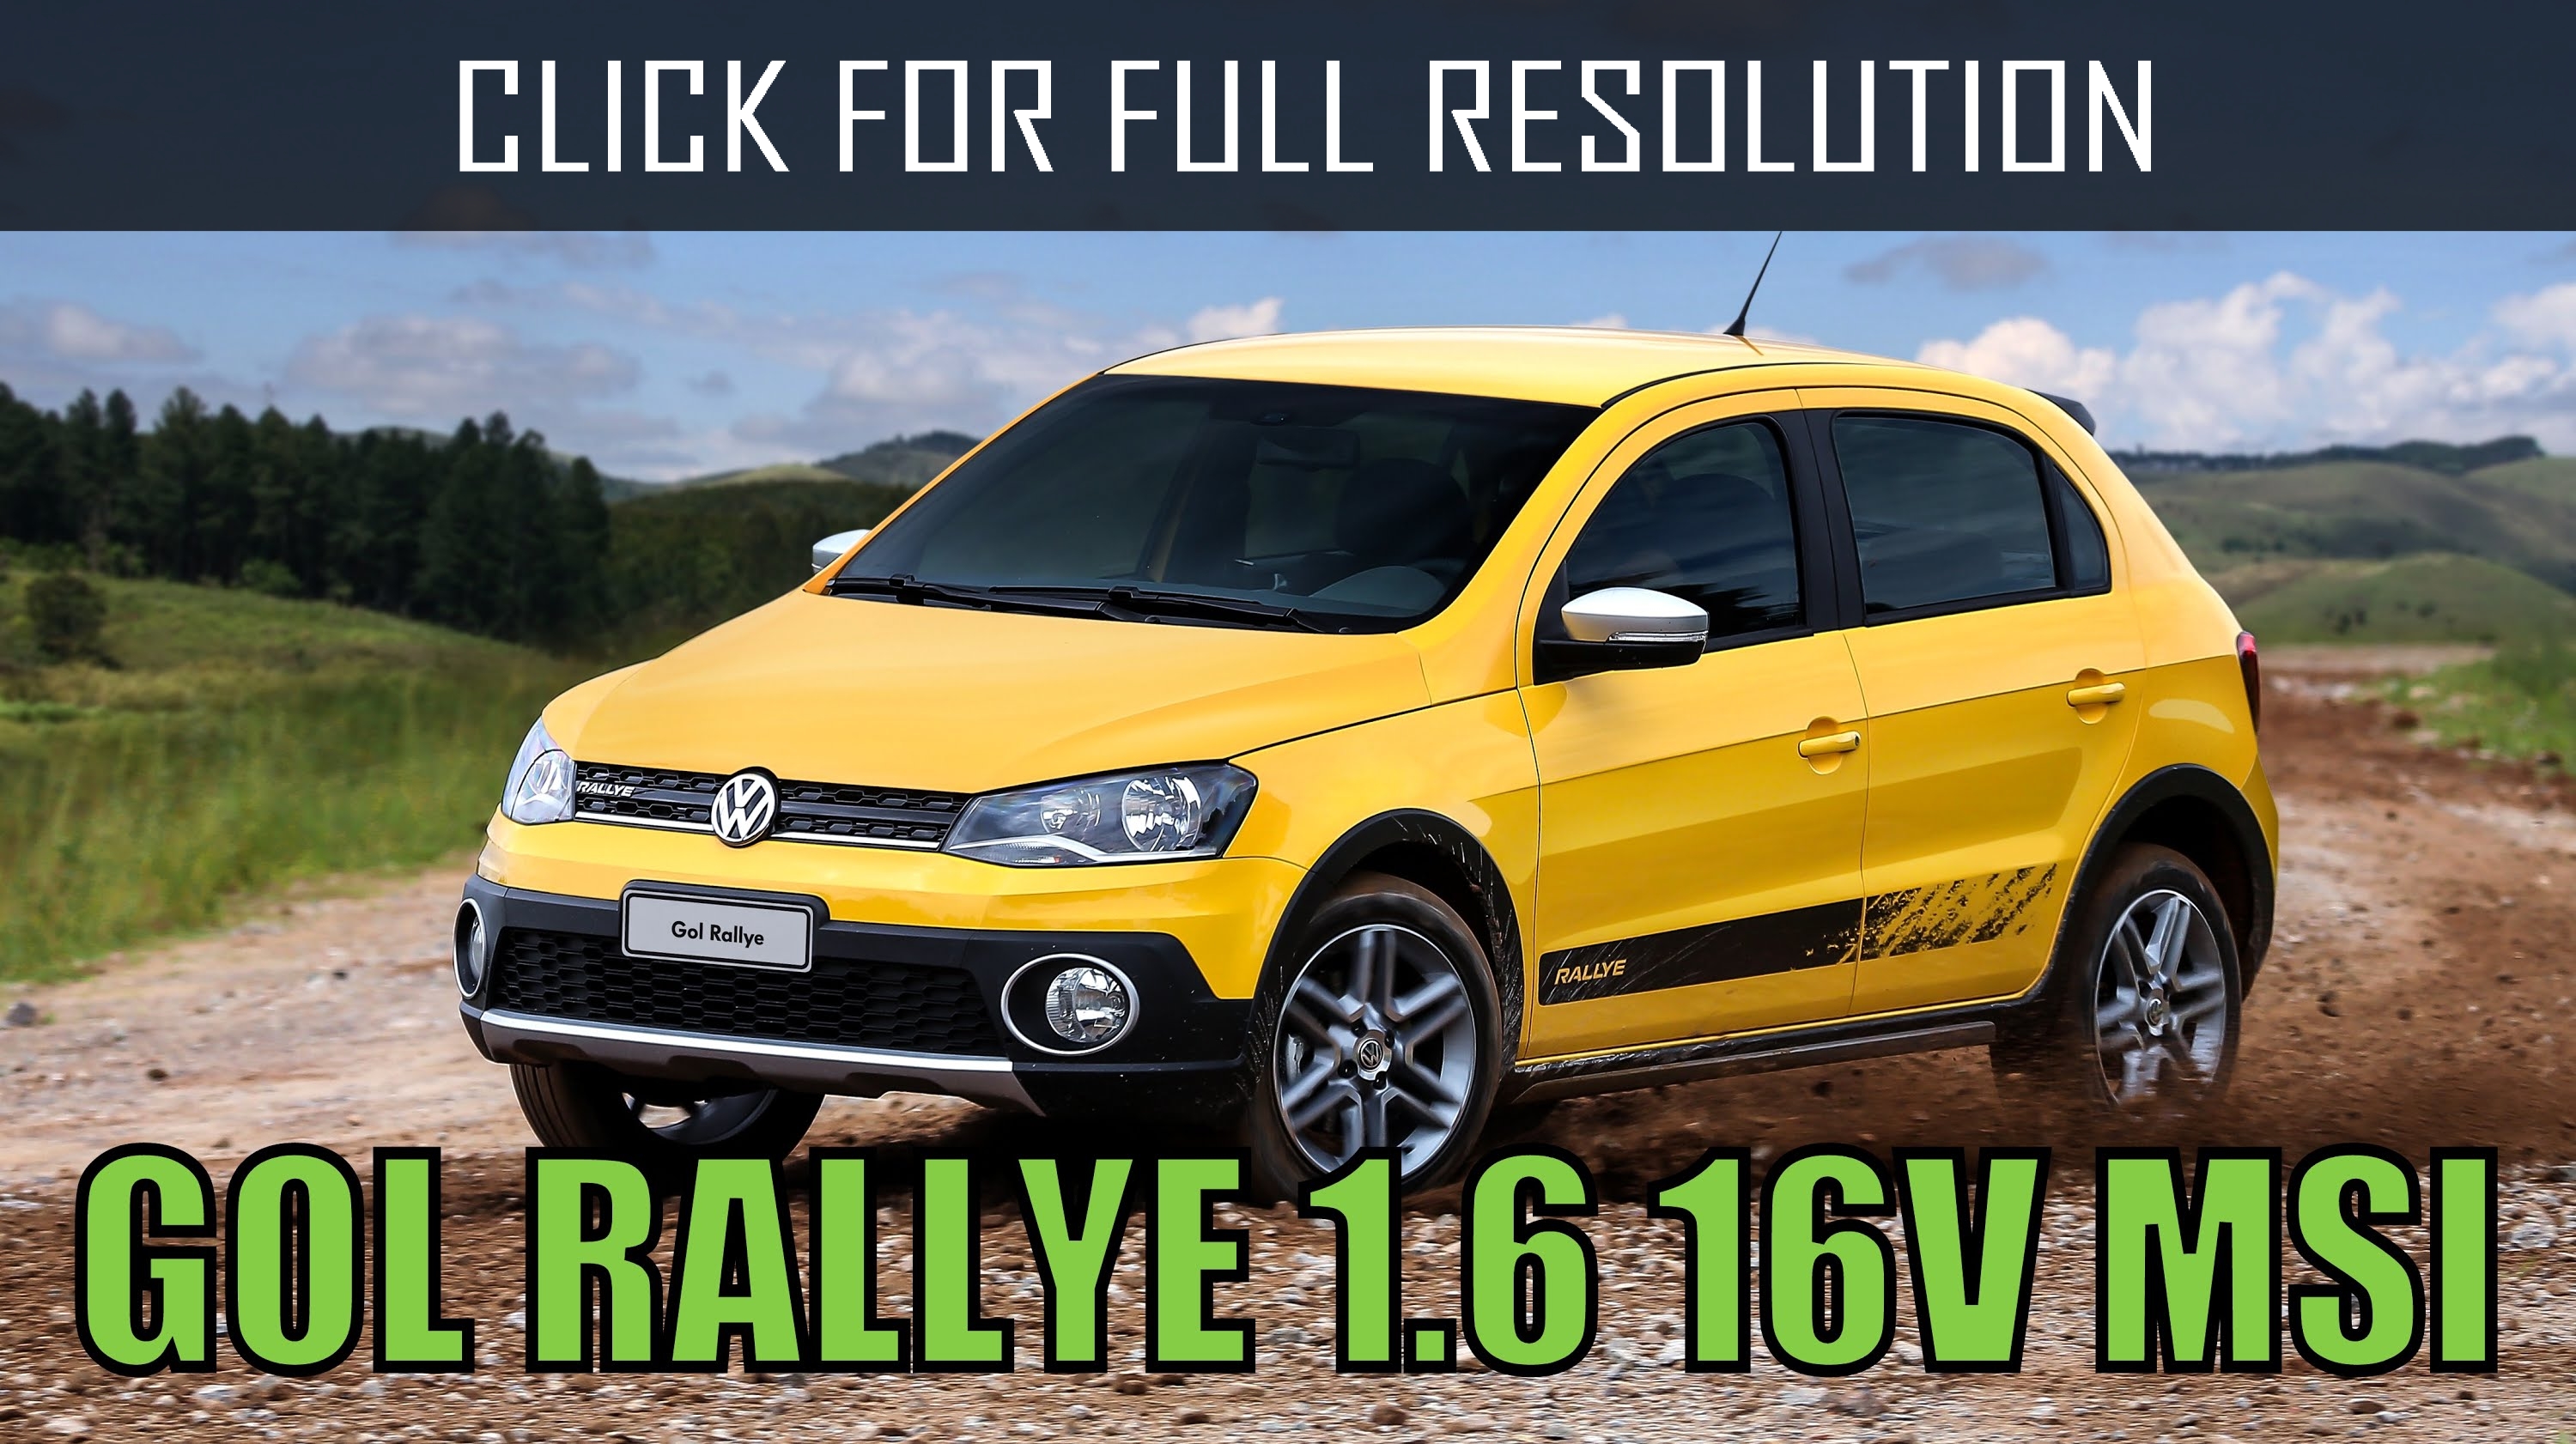 Volkswagen Gol Rallye